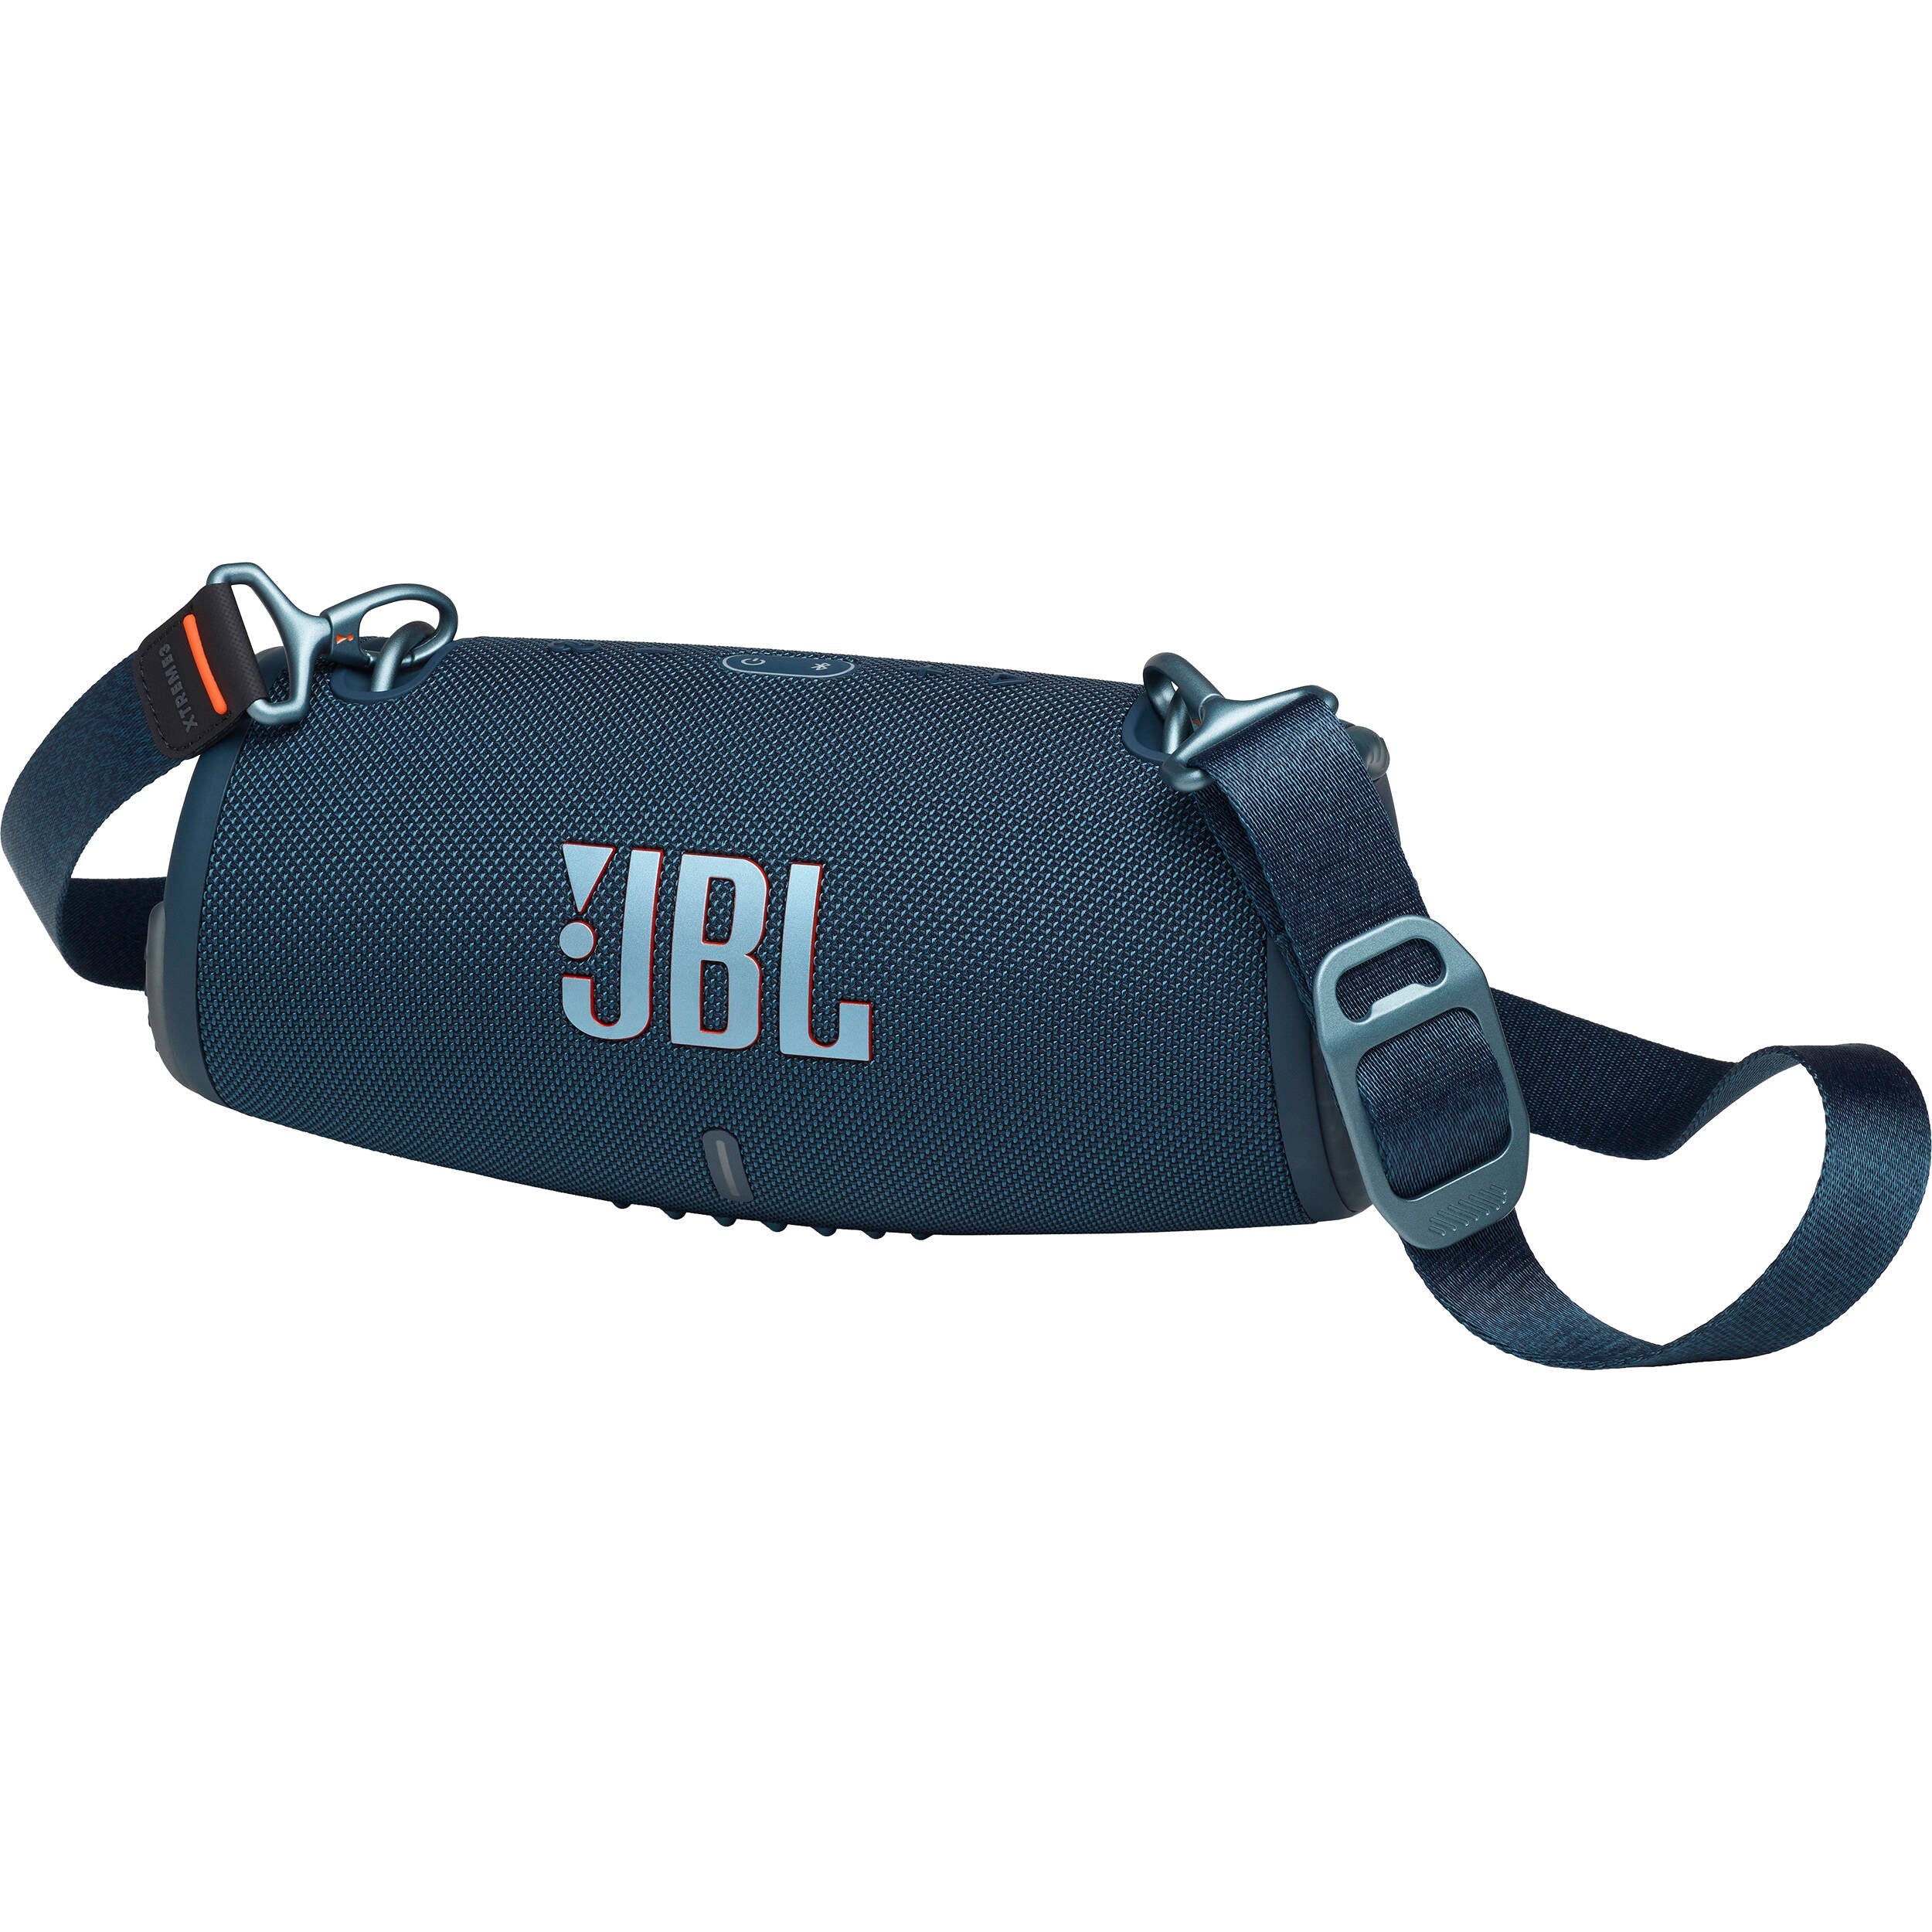 JBL JBLXTREME3BLUAM-Z Xtreme 3 Portable Waterproof Wireless Speaker, Blue - Certified Refurbished